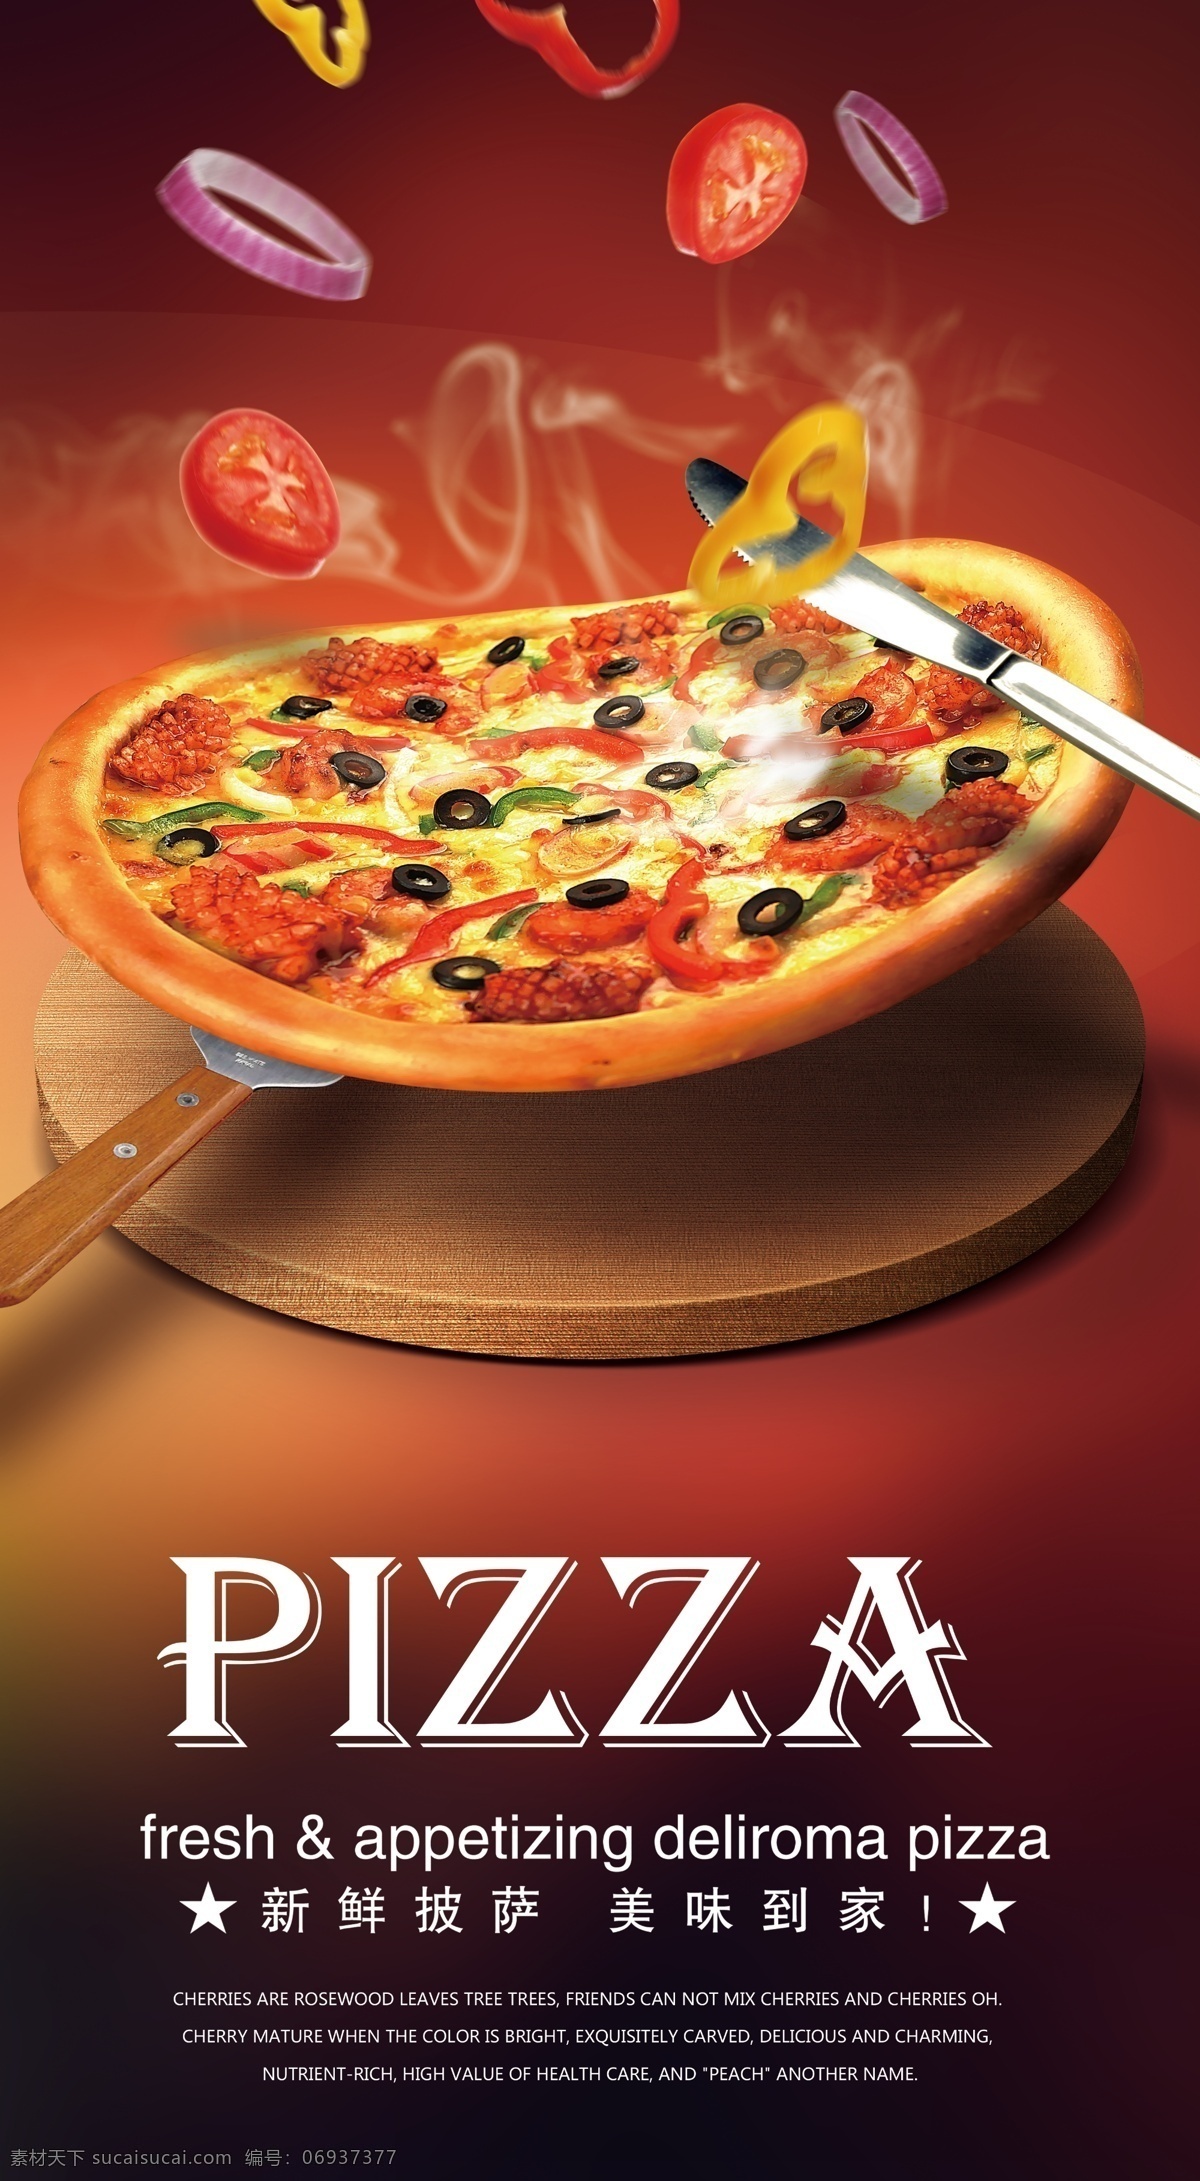 披萨海报 披萨 披萨展板 特色披萨 美味披萨 小吃 美食海报 美食小吃 披萨墙画 披萨图片 披萨菜单 牛肉披萨 夏威夷披萨 田园披萨 水果披萨 菠萝披萨 意式披萨 披萨字体 培根披萨 至尊披萨 披萨展架 西餐披萨 披萨广告 披萨宣传 披萨店 室内广告设计